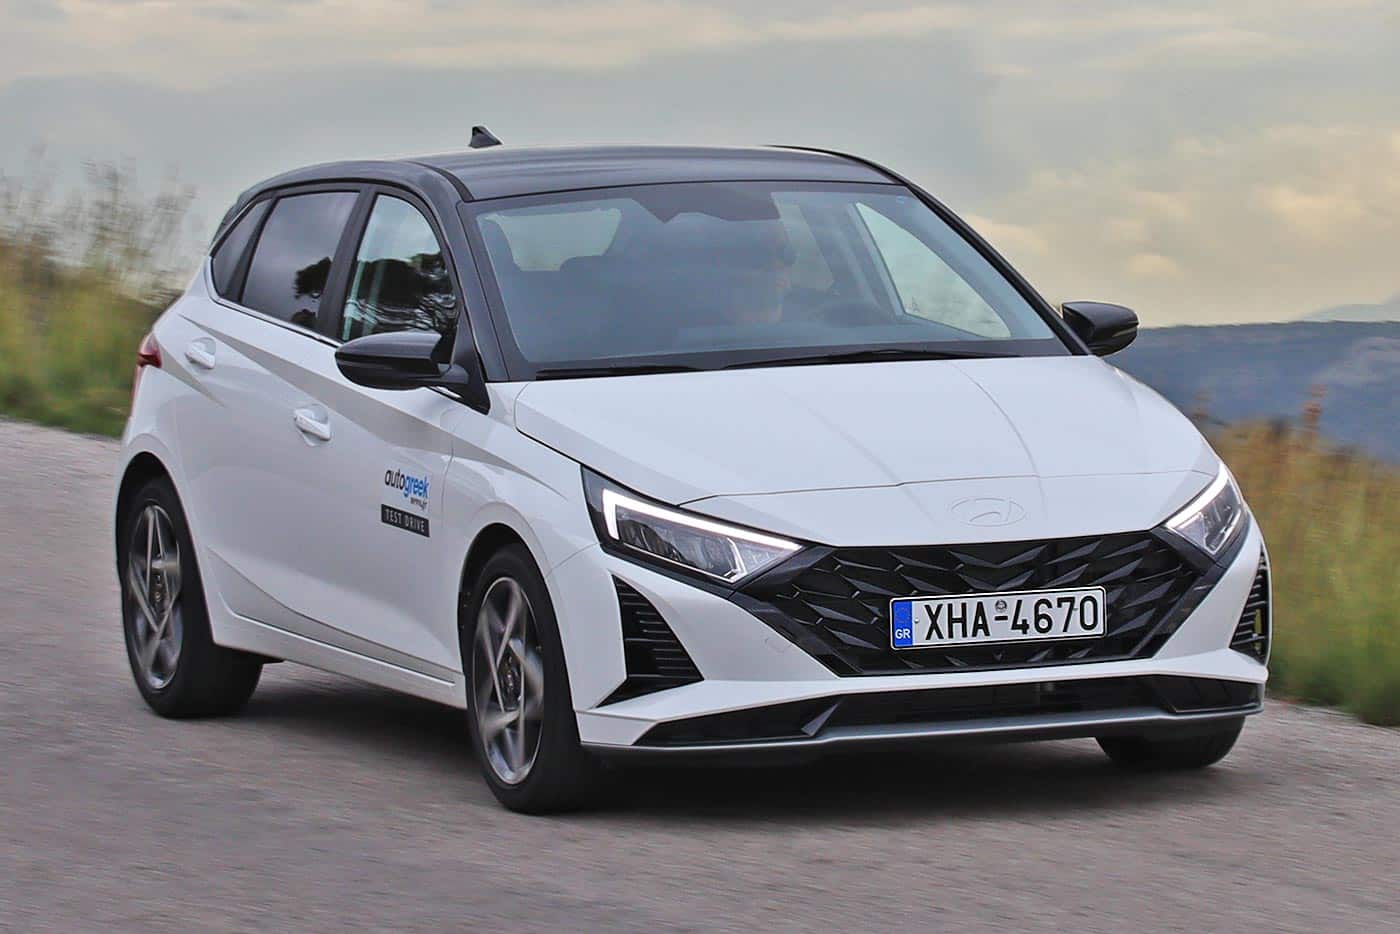 Φουλ του άσσου Hyundai i20 σε προσιτές τιμές